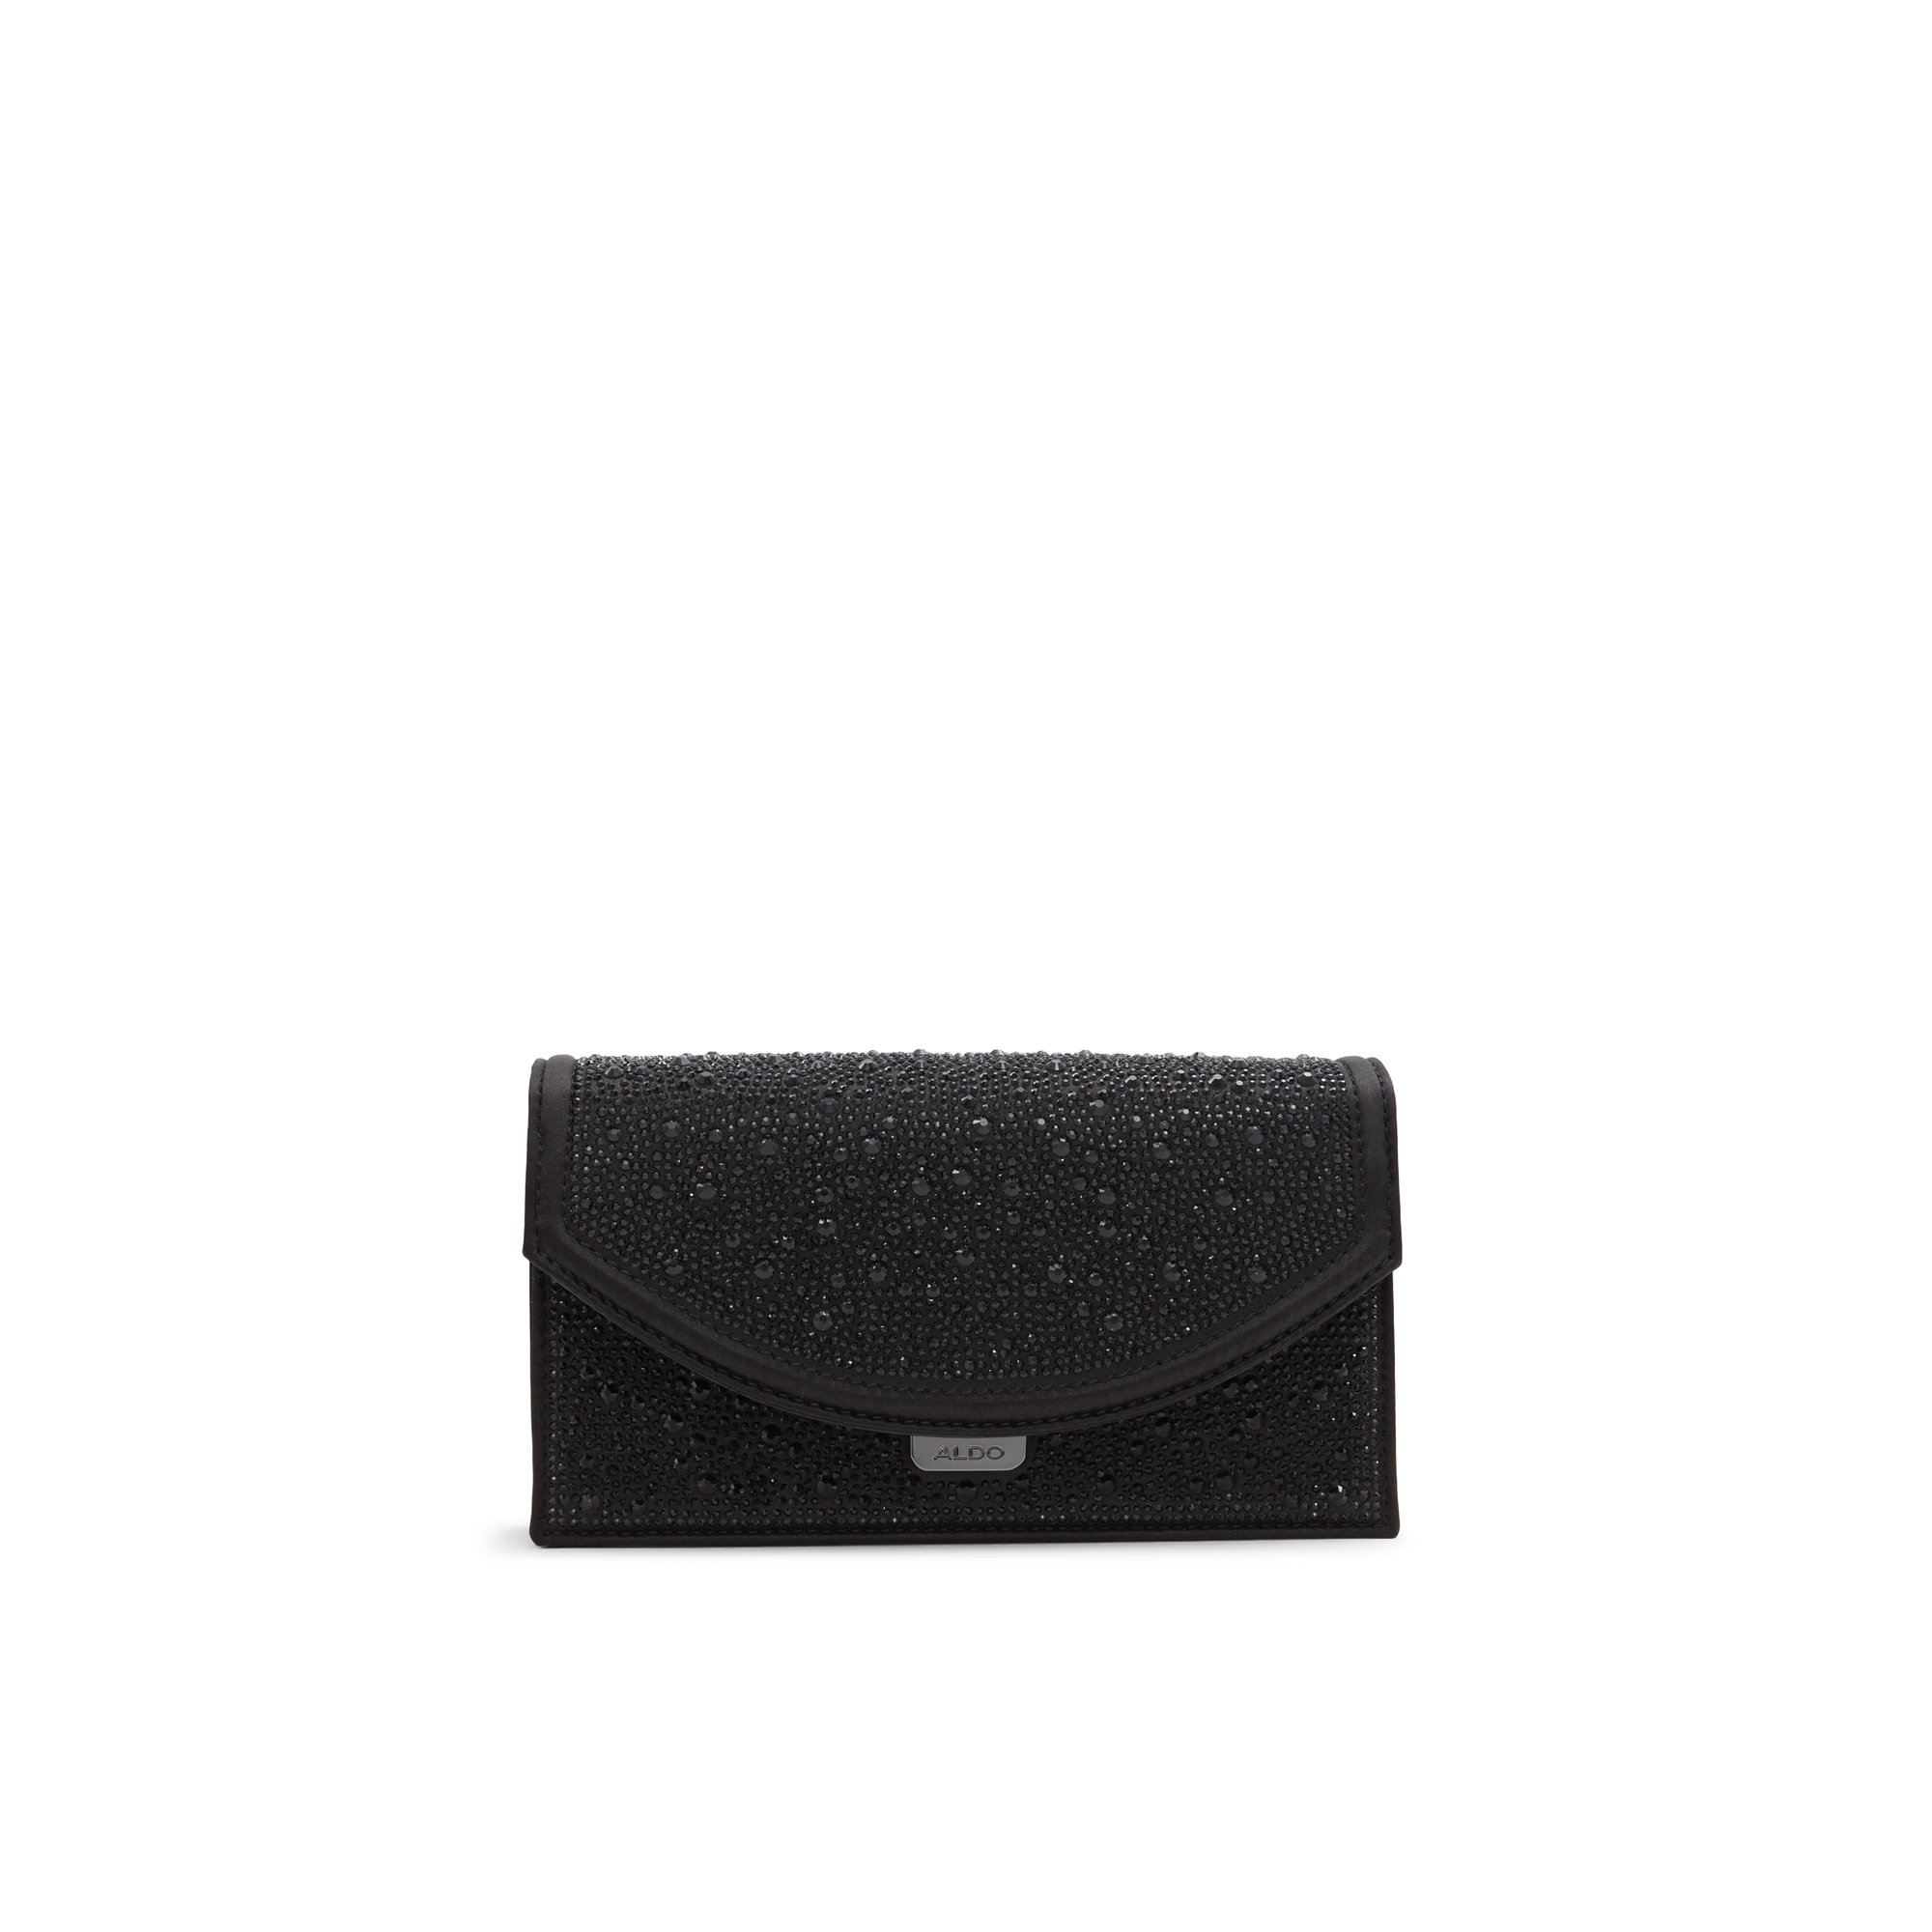 ALDO Enennon - Women's Clutches & Evening Bag Handbag - Black